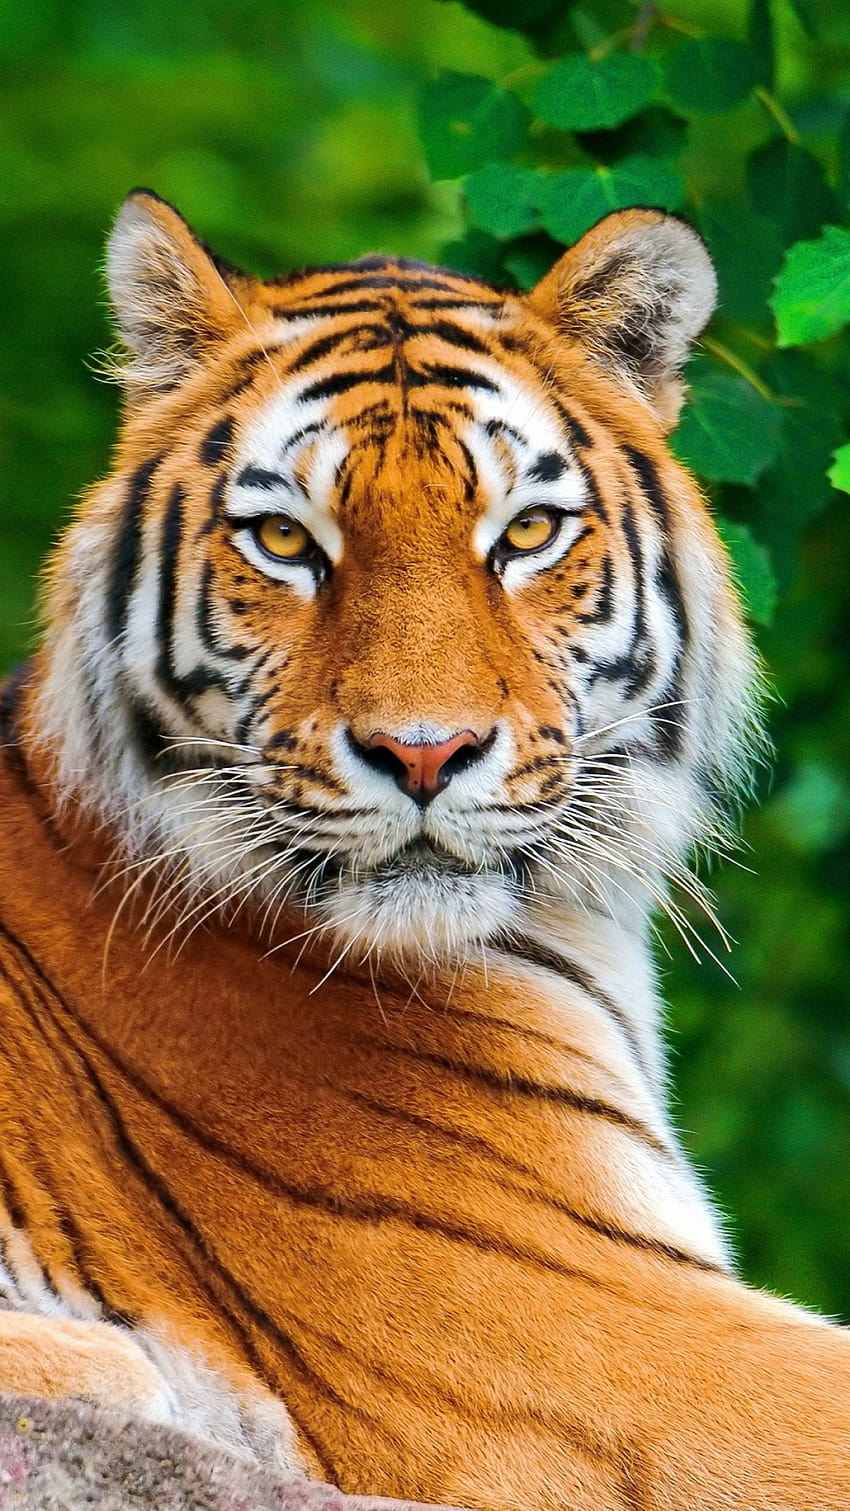 Tiger Desktop Backgrounds - Wallpaper Cave